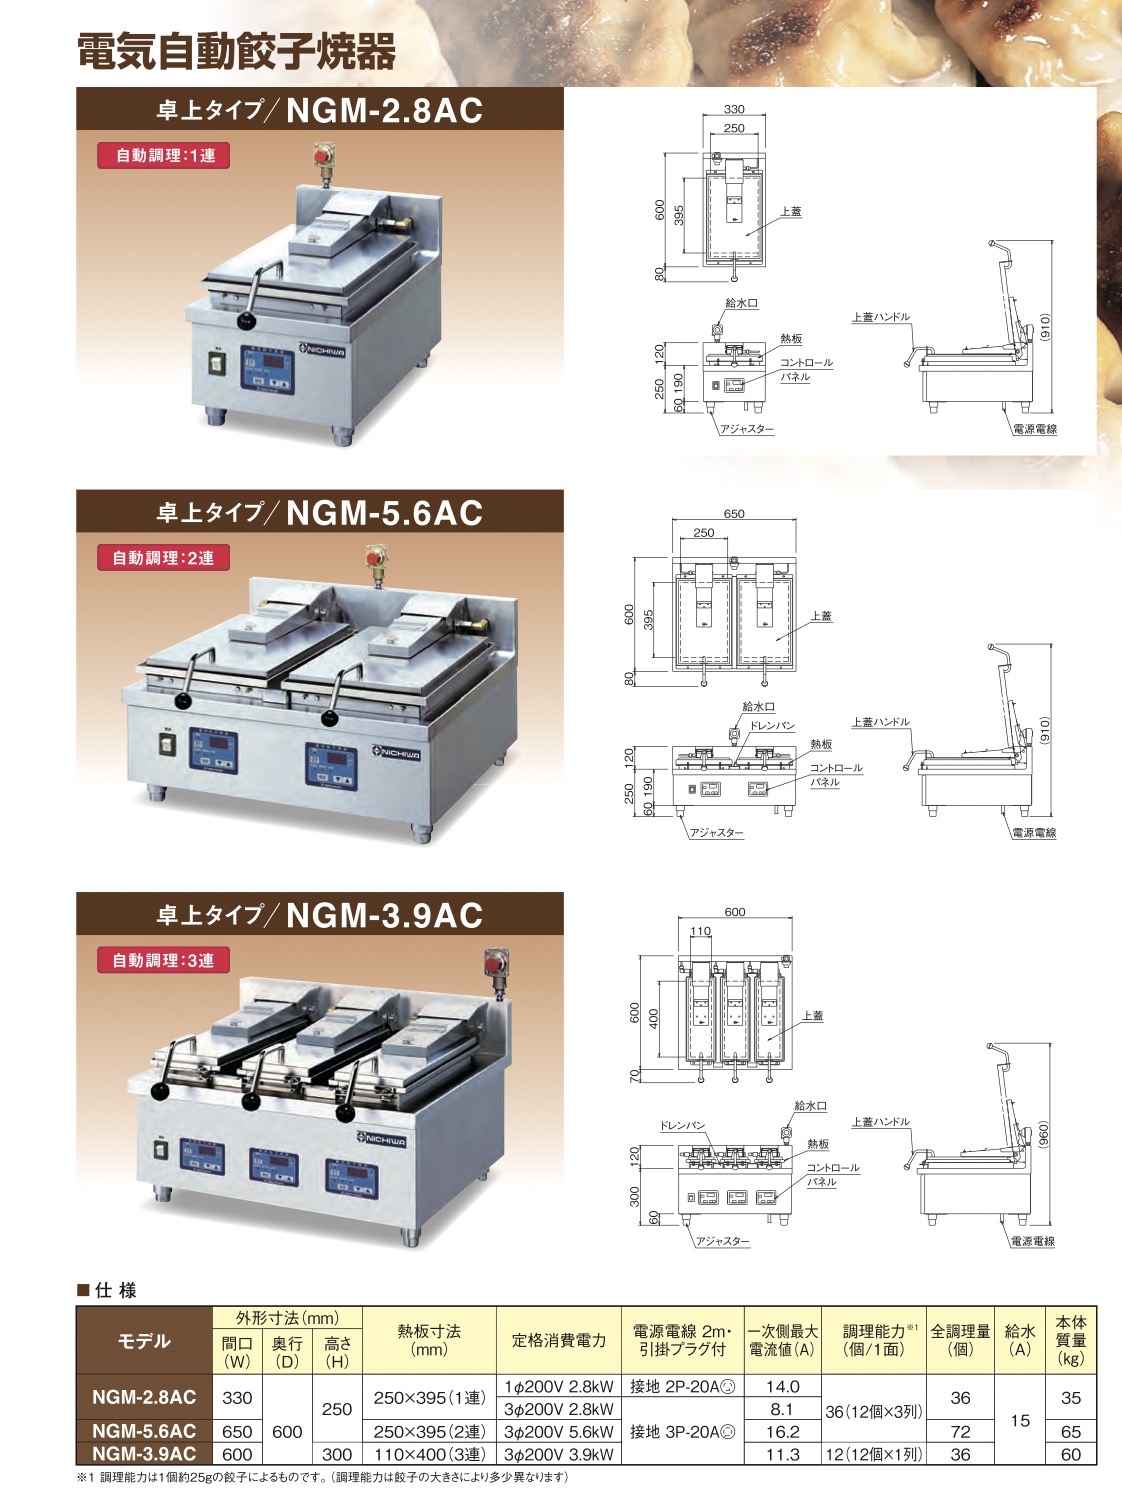 電気自動餃子焼器 NGM-5.6AC 幅650×奥行600×高さ250(mm) - 4